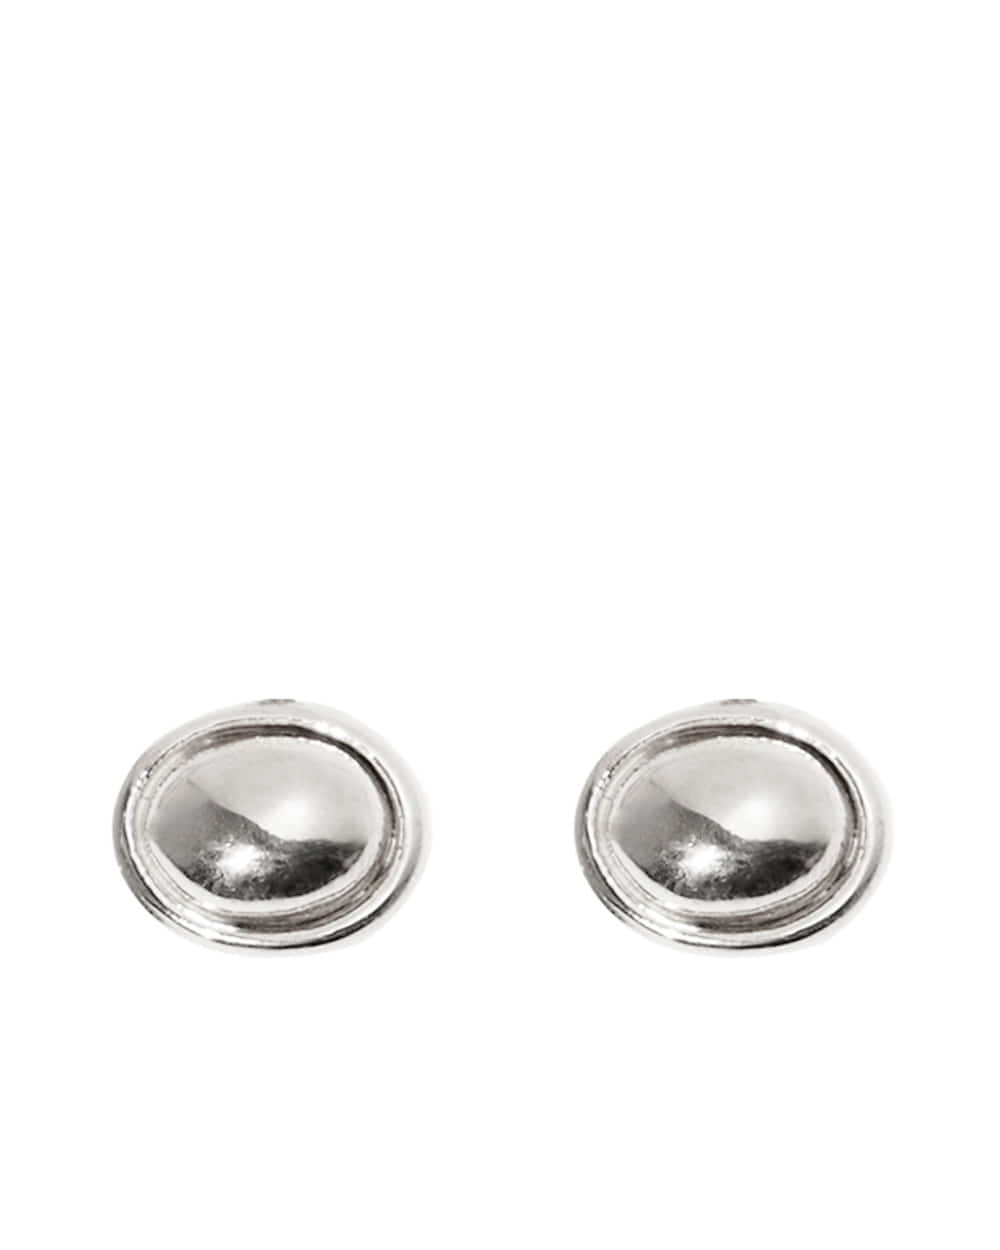 Noel silverstone earring / Silver